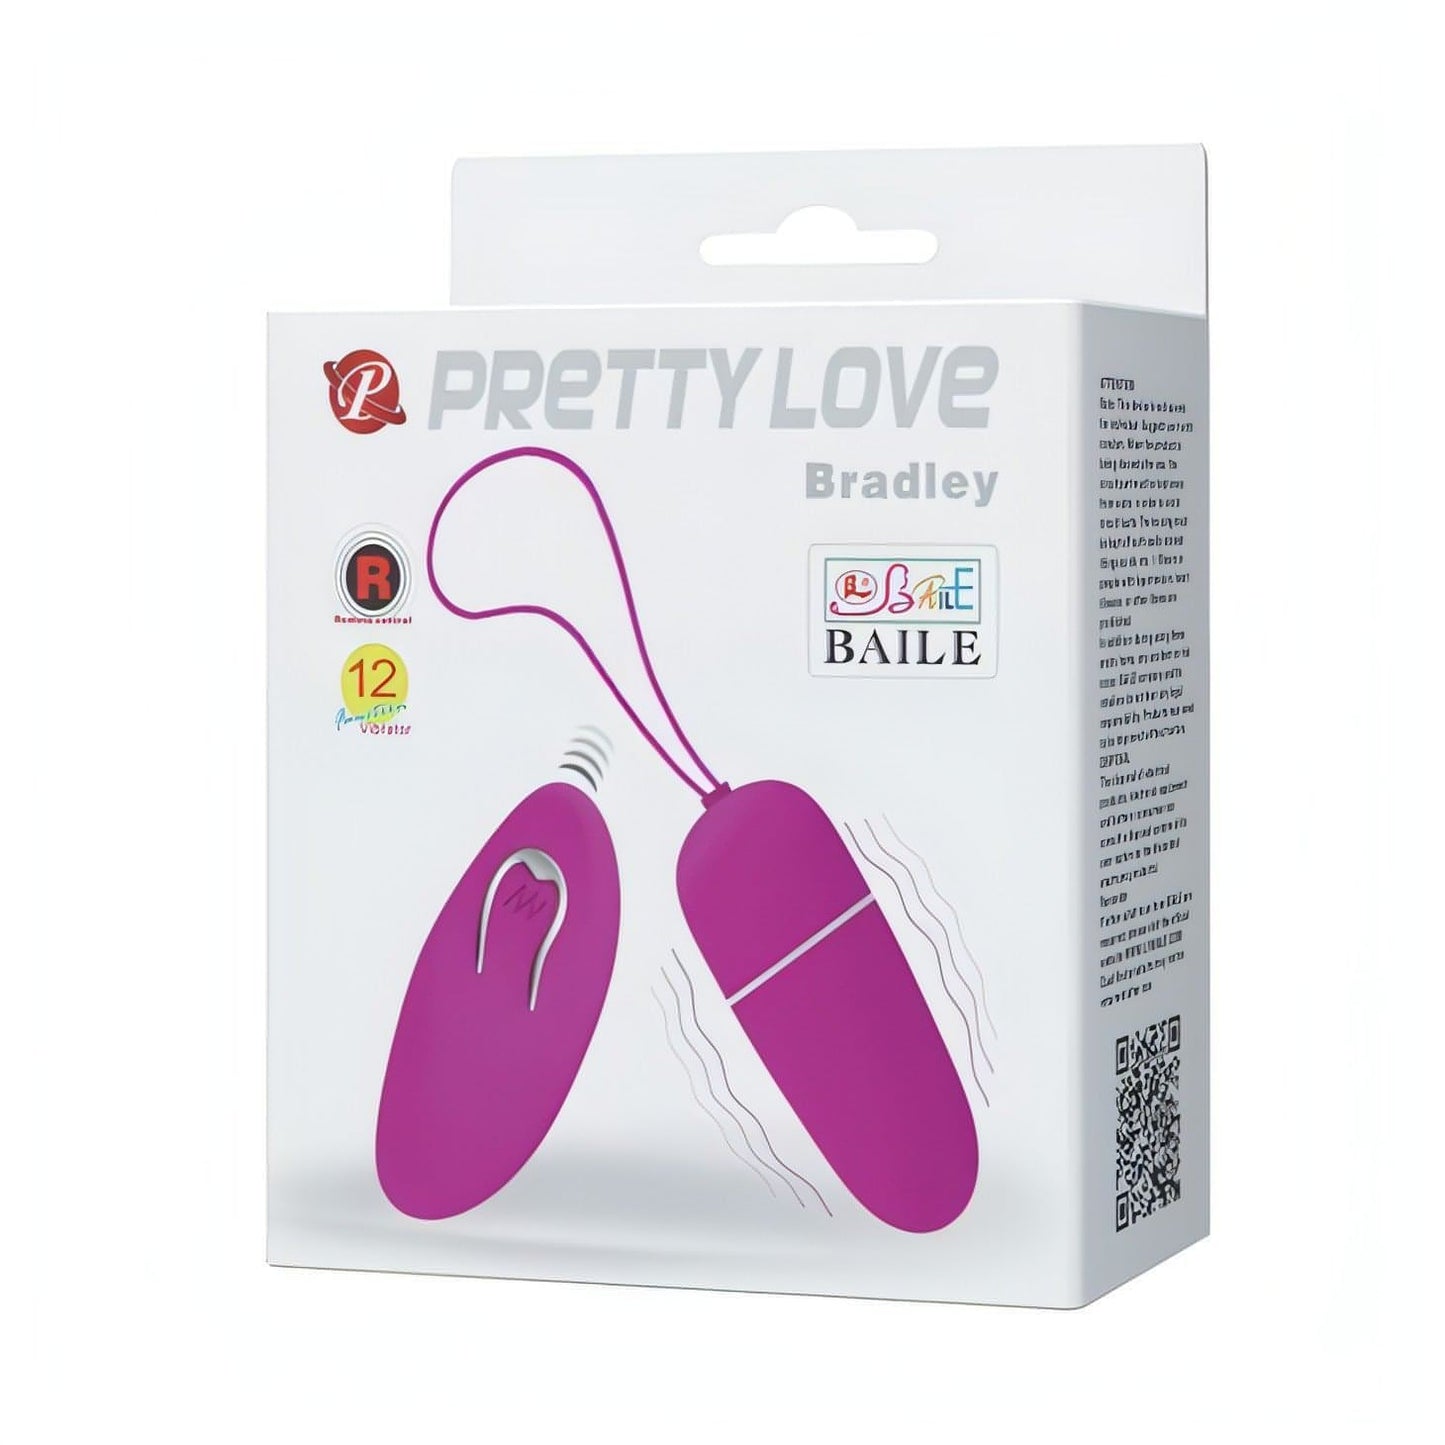 Ovetto vibrante mini Bradley - 12 modalità di vibrazione Pretty Love